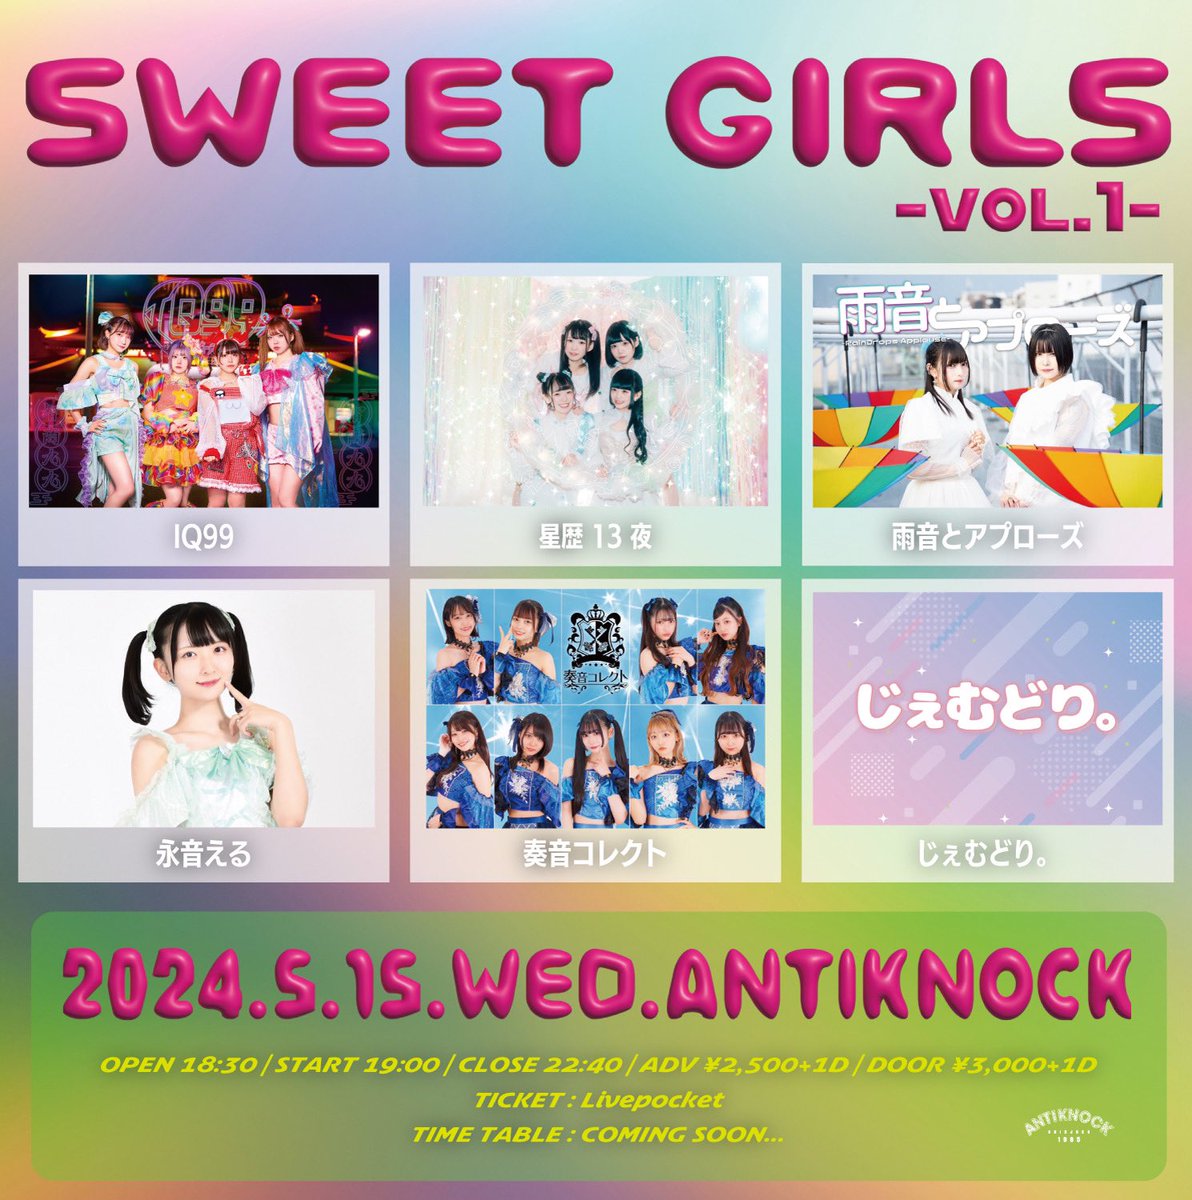 🌟 らいぶ の おしらせ 🌟 5/15(水) Shinjuku ANTIKNOCK presents 【SWEET GIRLS vol.1】 at 新宿ANTIKONCK ●OPEN18:30/START19:00 ●ADV¥2,500+1D(¥600)/DOOR¥3,000+1D(¥600) 購入ページURL：t.livepocket.jp/e/sweet1 くわしく seireki13ya.com/live/24-0515/ #星歴13夜